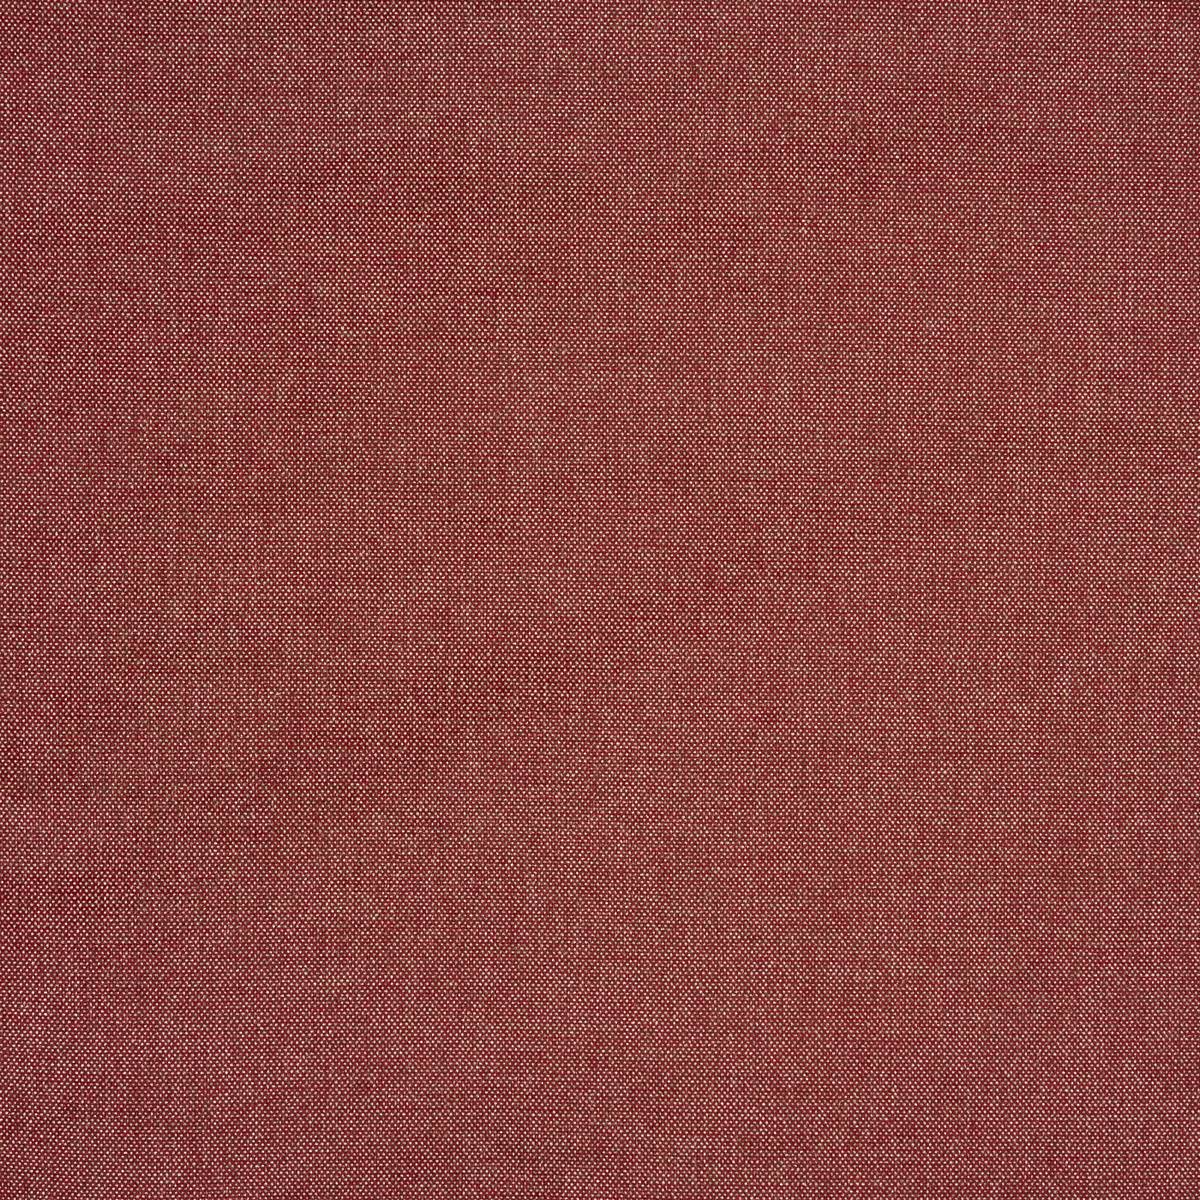 Chino Crimson Fabric by Prestigious Textiles